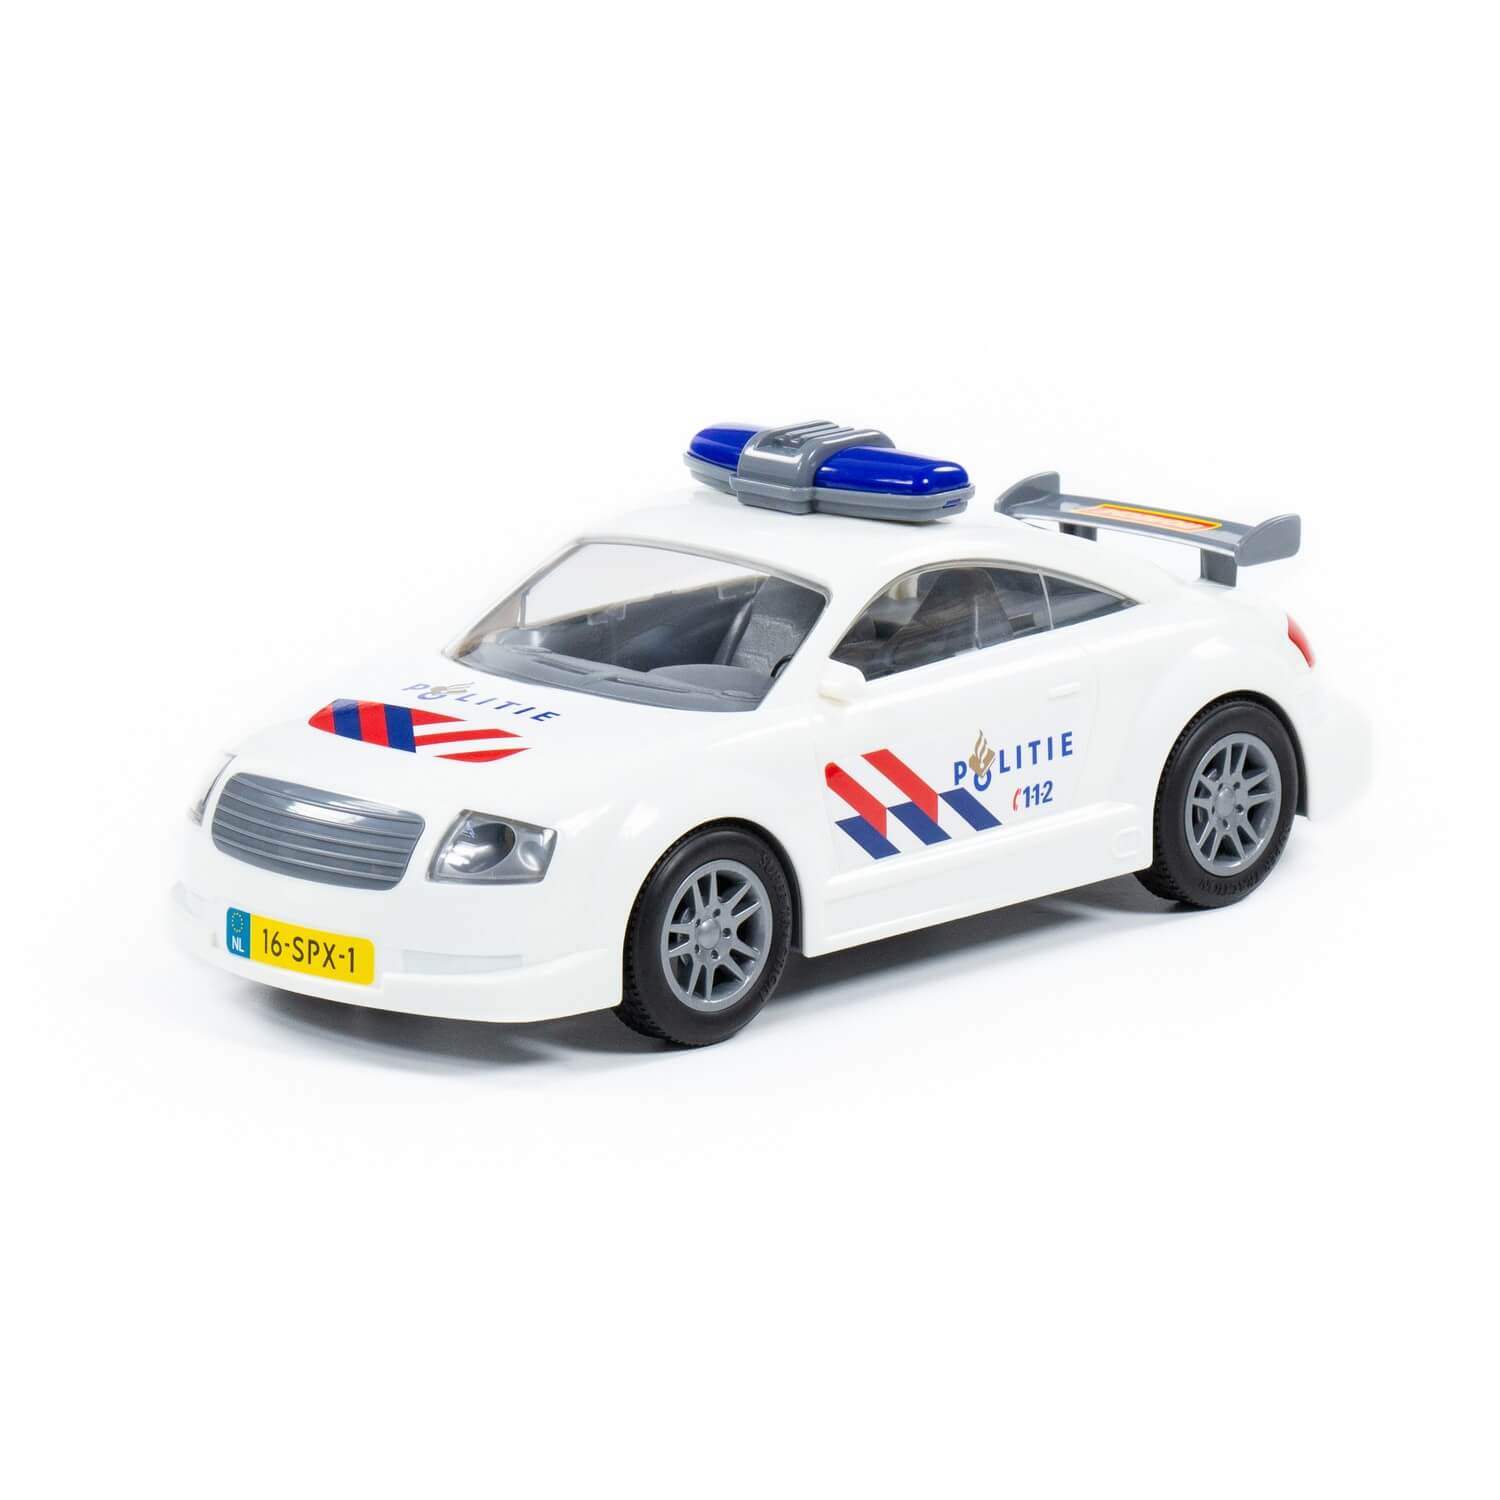 Автомобиль инерционный Politie 48066 racing автомобиль инерционный